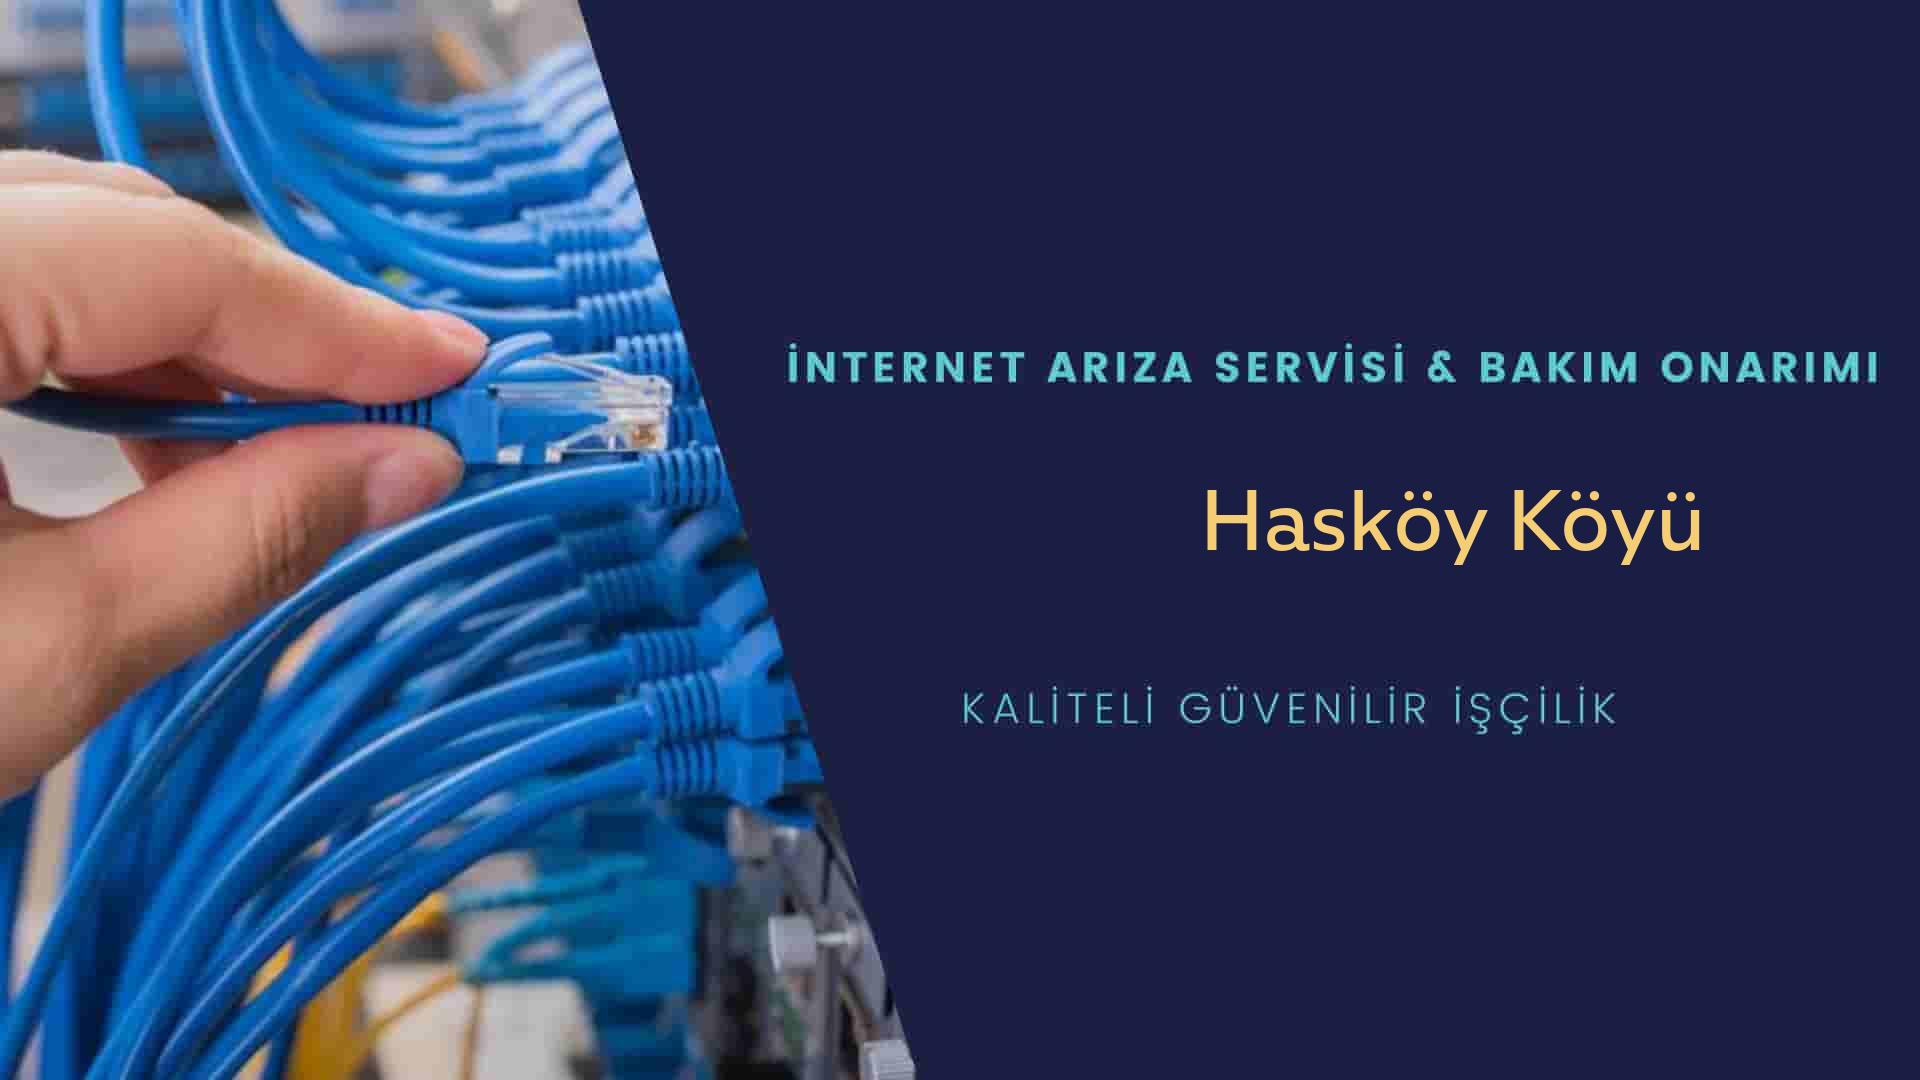 Hasköy Köyü internet kablosu çekimi yapan yerler veya elektrikçiler mi? arıyorsunuz doğru yerdesiniz o zaman sizlere 7/24 yardımcı olacak profesyonel ustalarımız bir telefon kadar yakındır size.